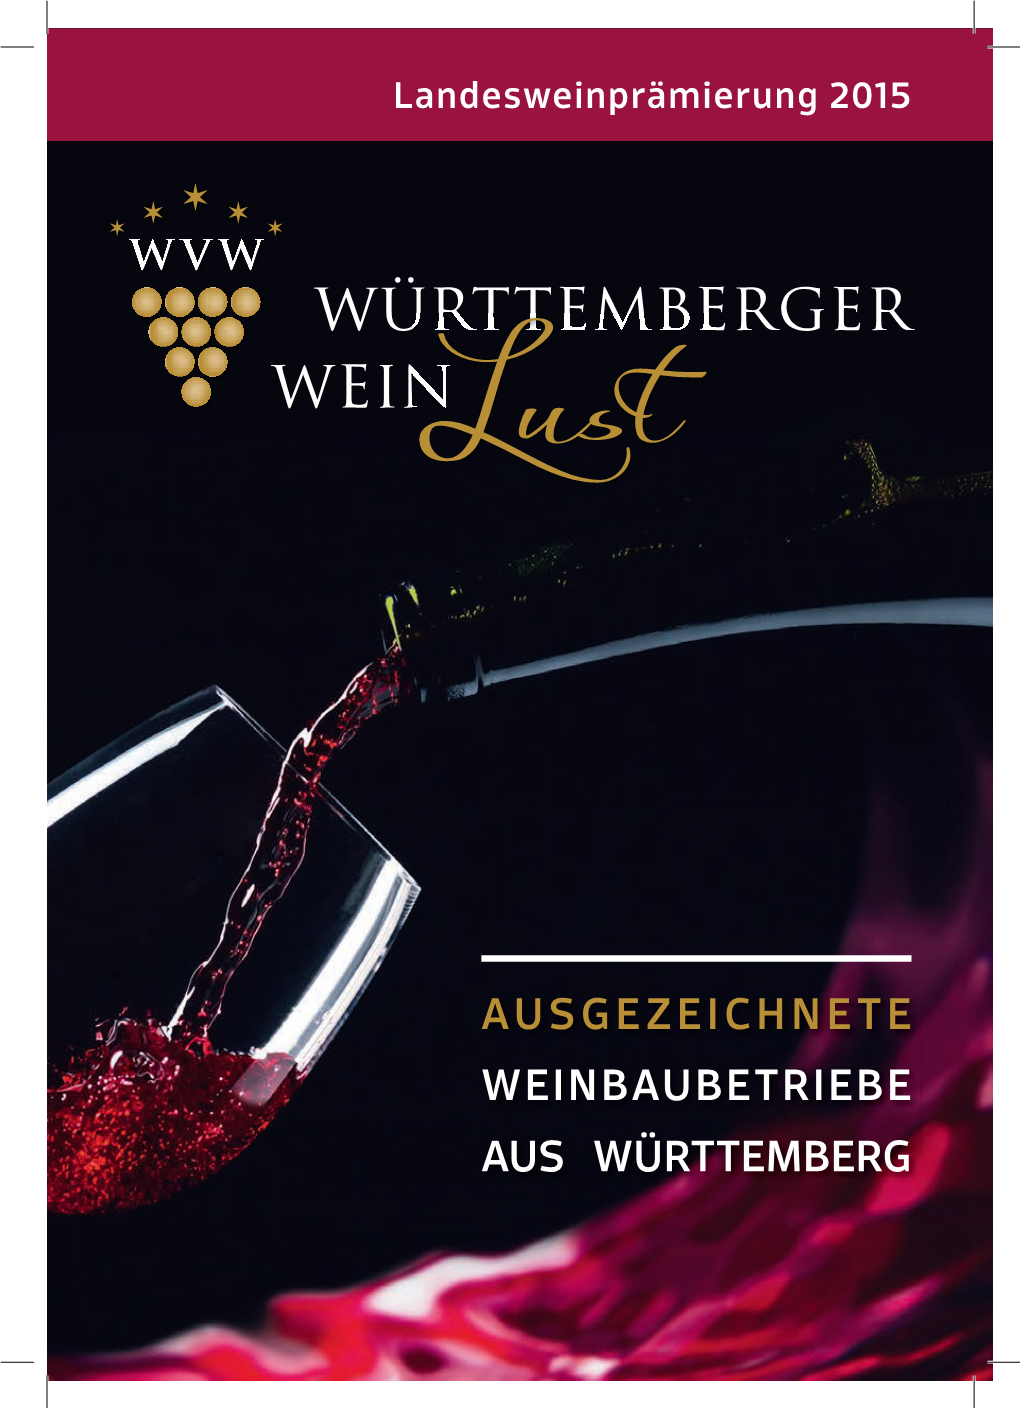 "Württemberger Weinlust" 2015